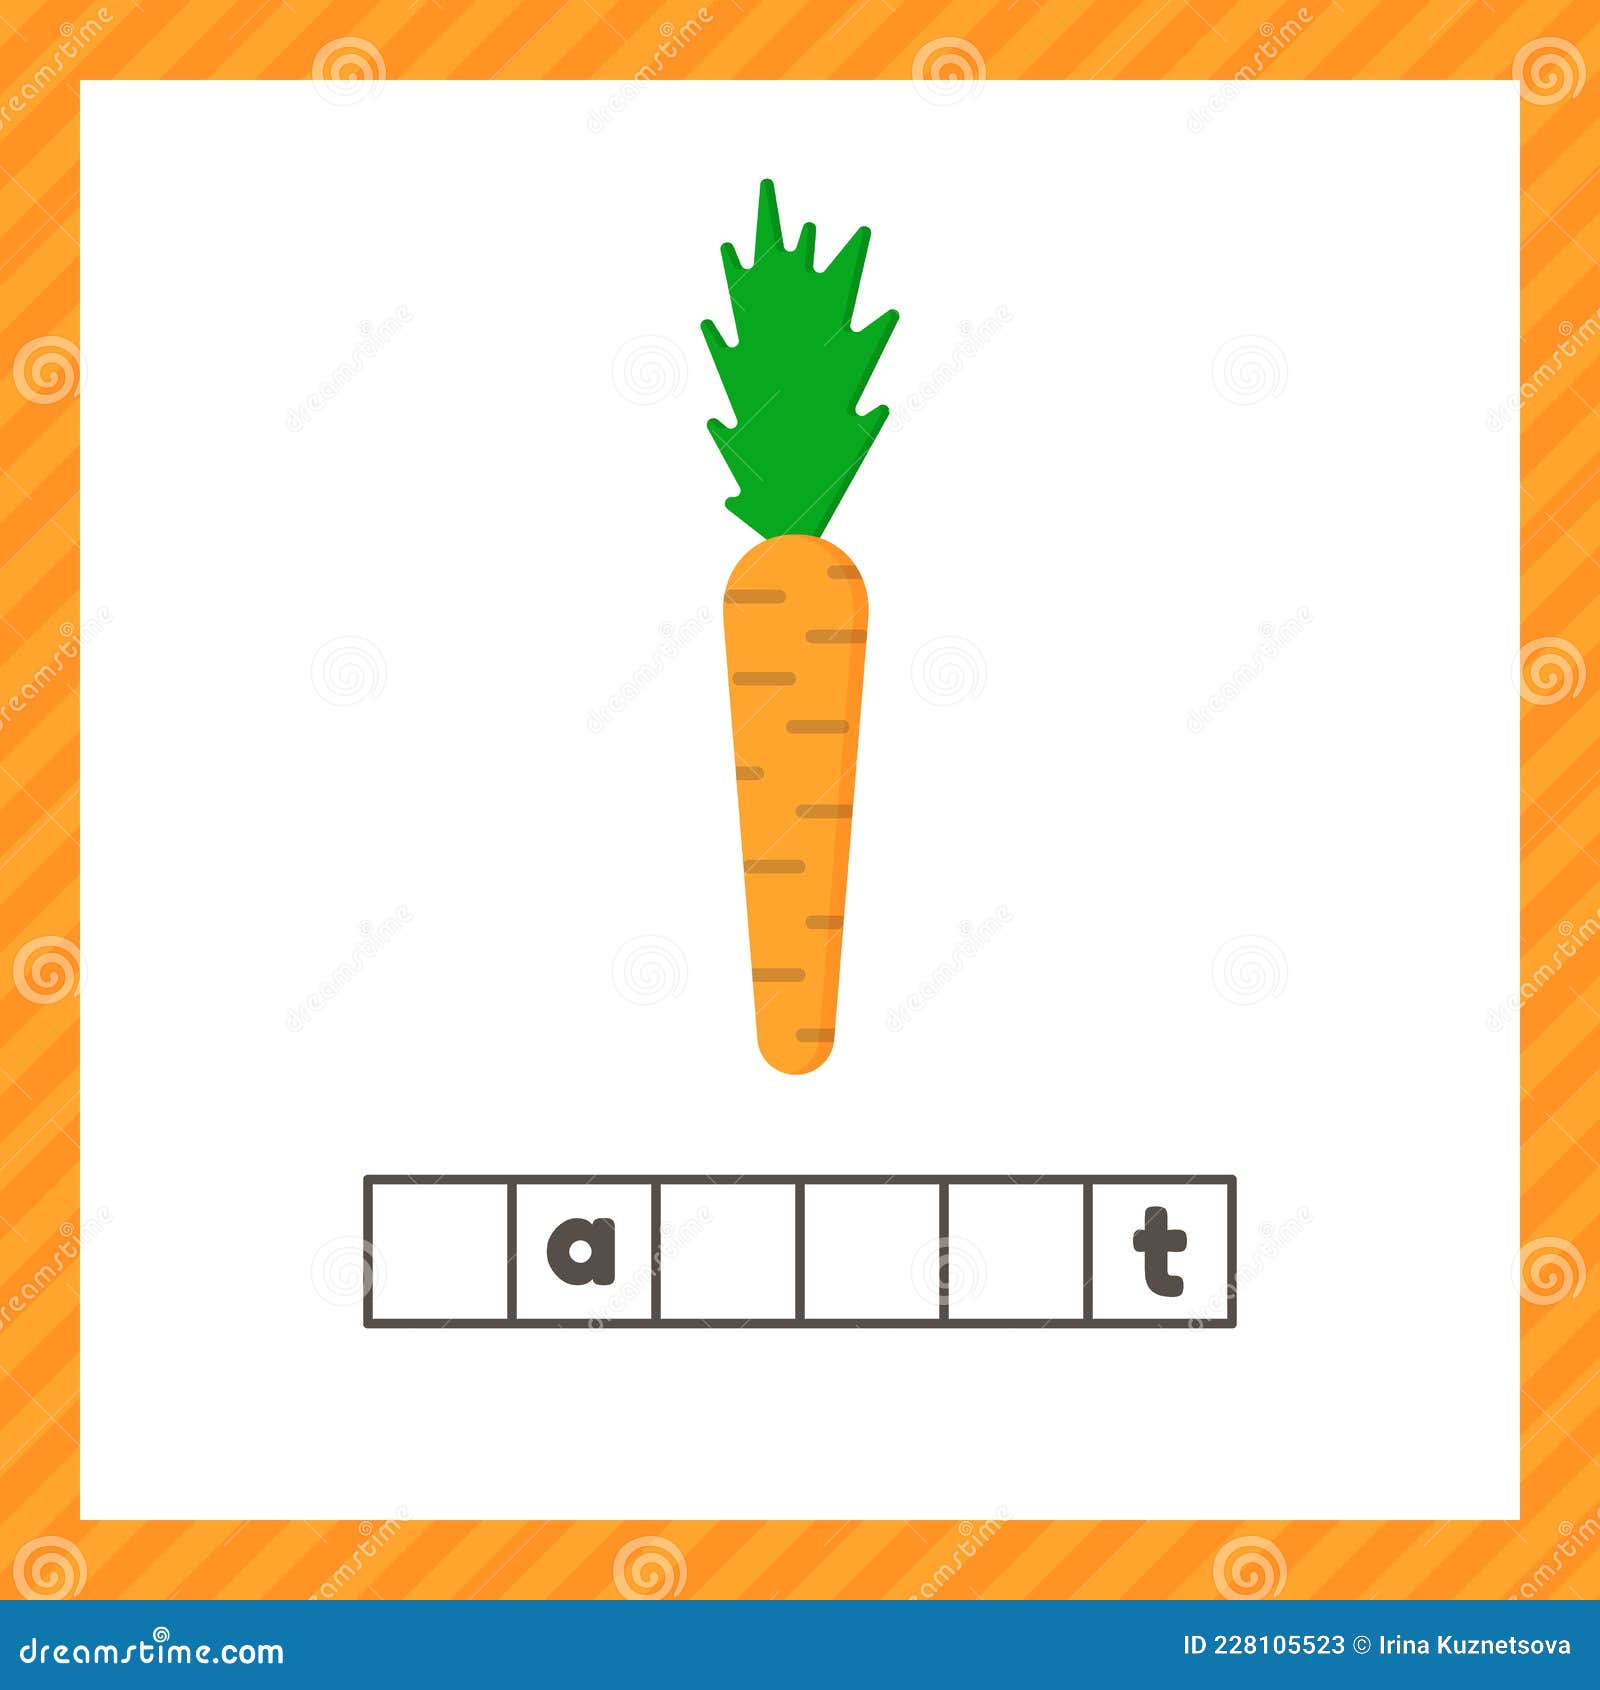 儿童教育游戏 单词搜索拼图与动画片蔬菜 儿童活动表 — 图库矢量图像© IgdeevaAlena #219845932